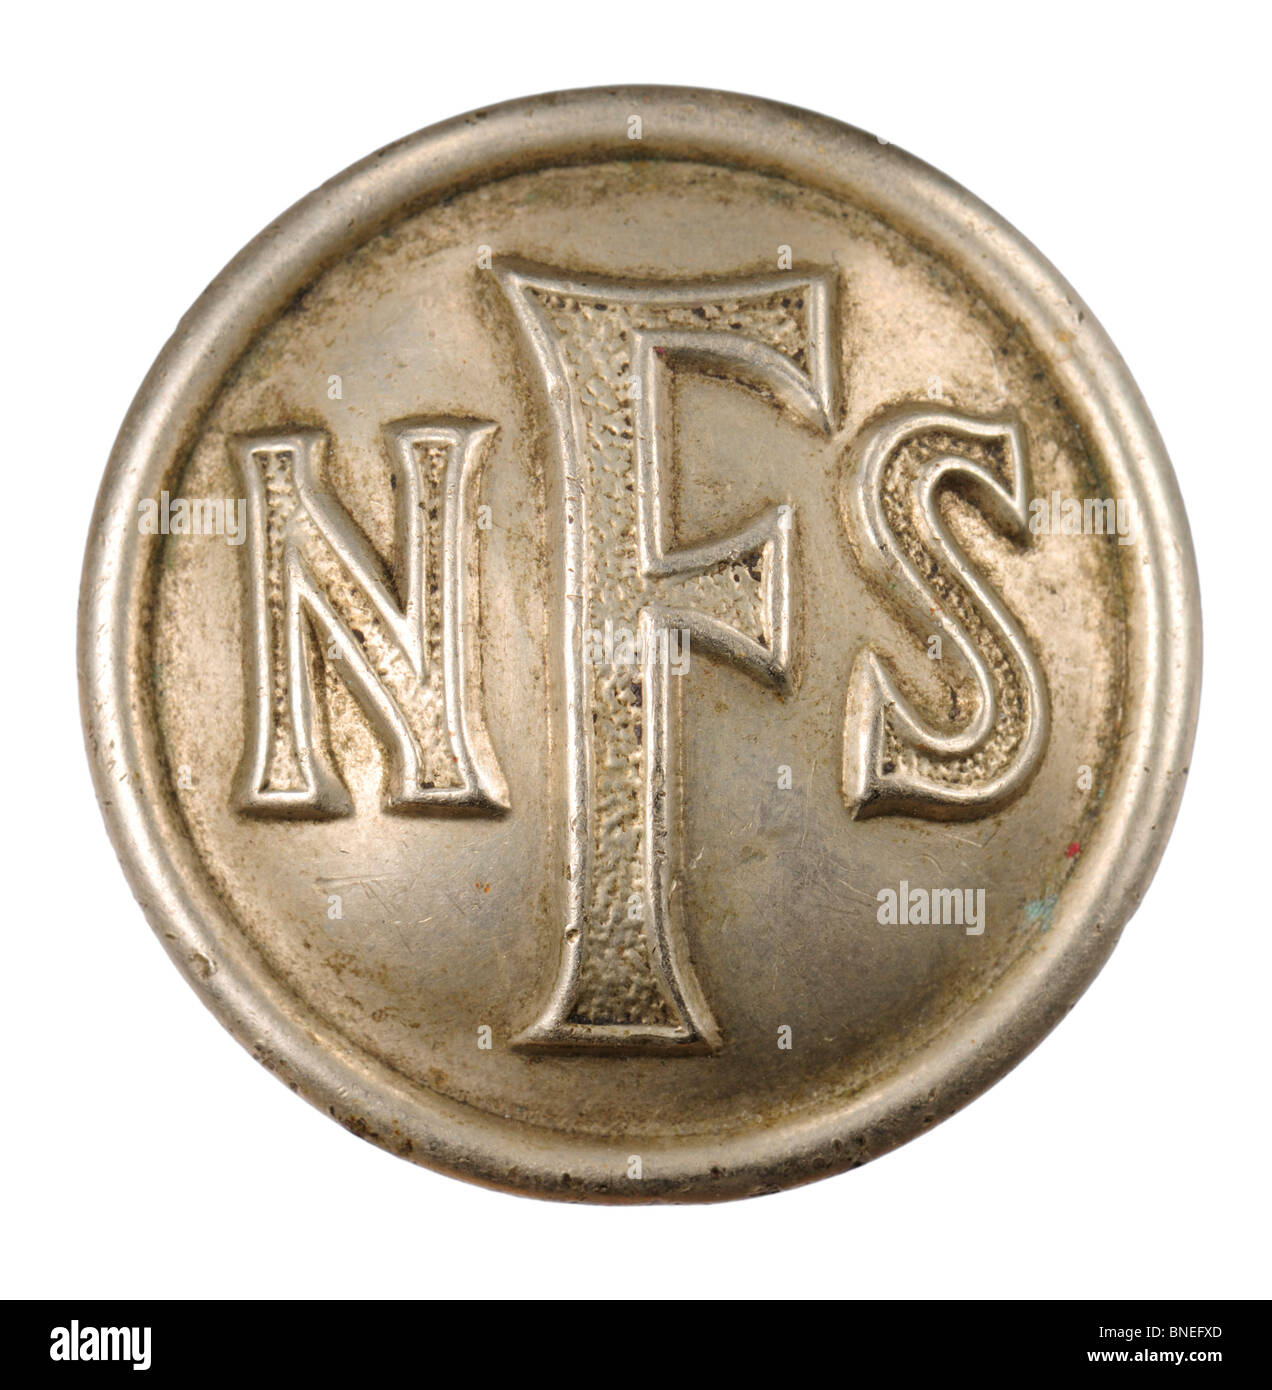 NFS (Servizio Nazionale dei Vigili del Fuoco) Pulsante. La Seconda Guerra Mondiale / British Foto Stock